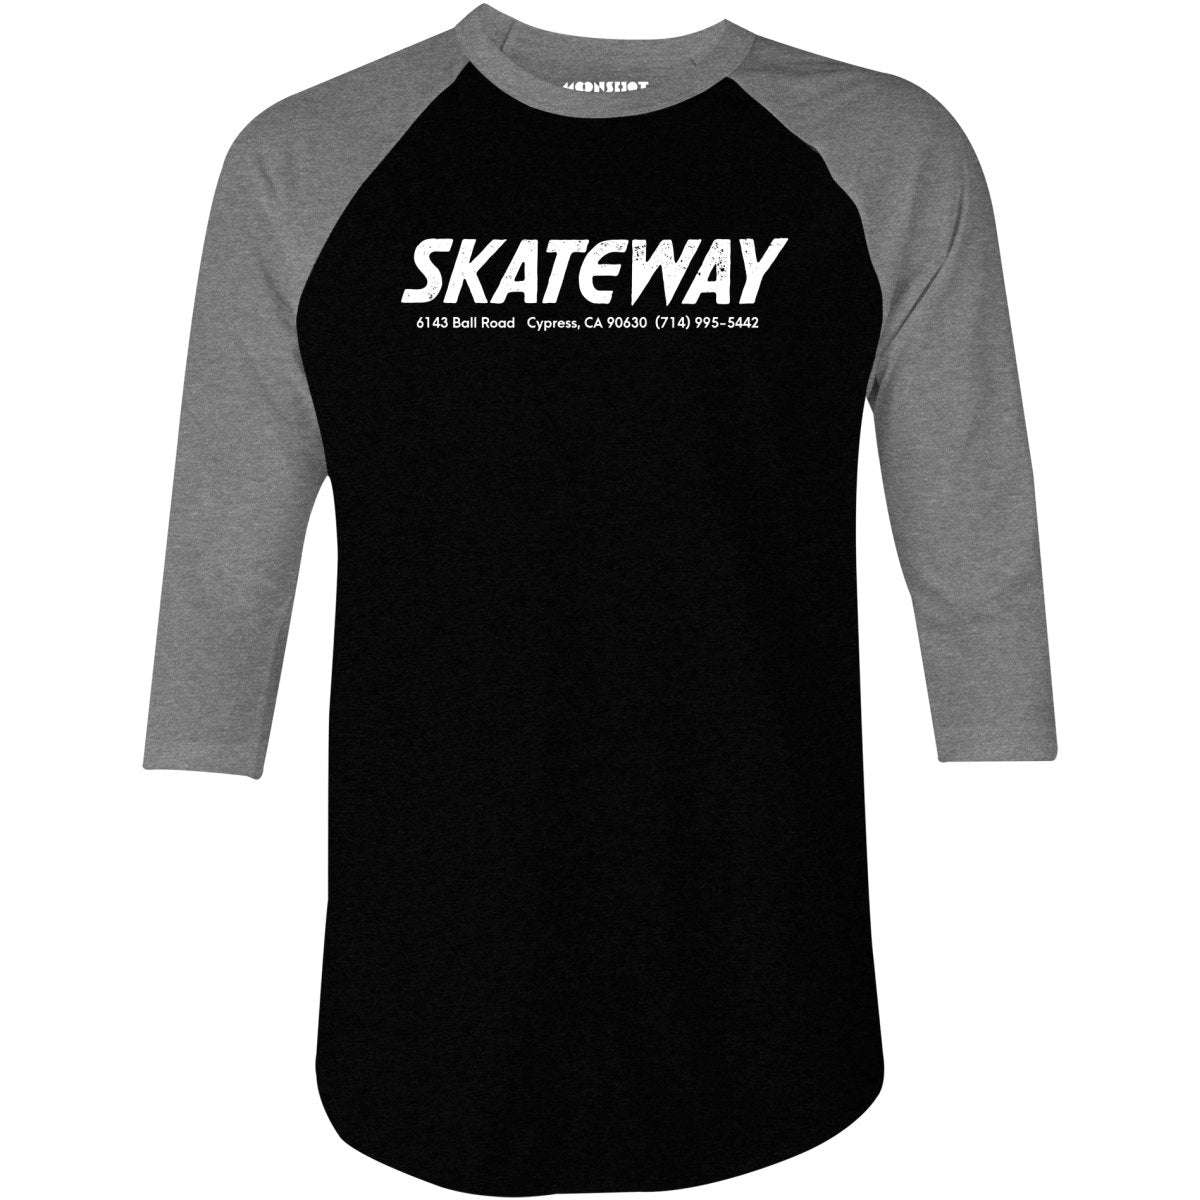 Skateway - Cypress, CA - Vintage Roller Rink - 3/4 Sleeve Raglan T-Shirt